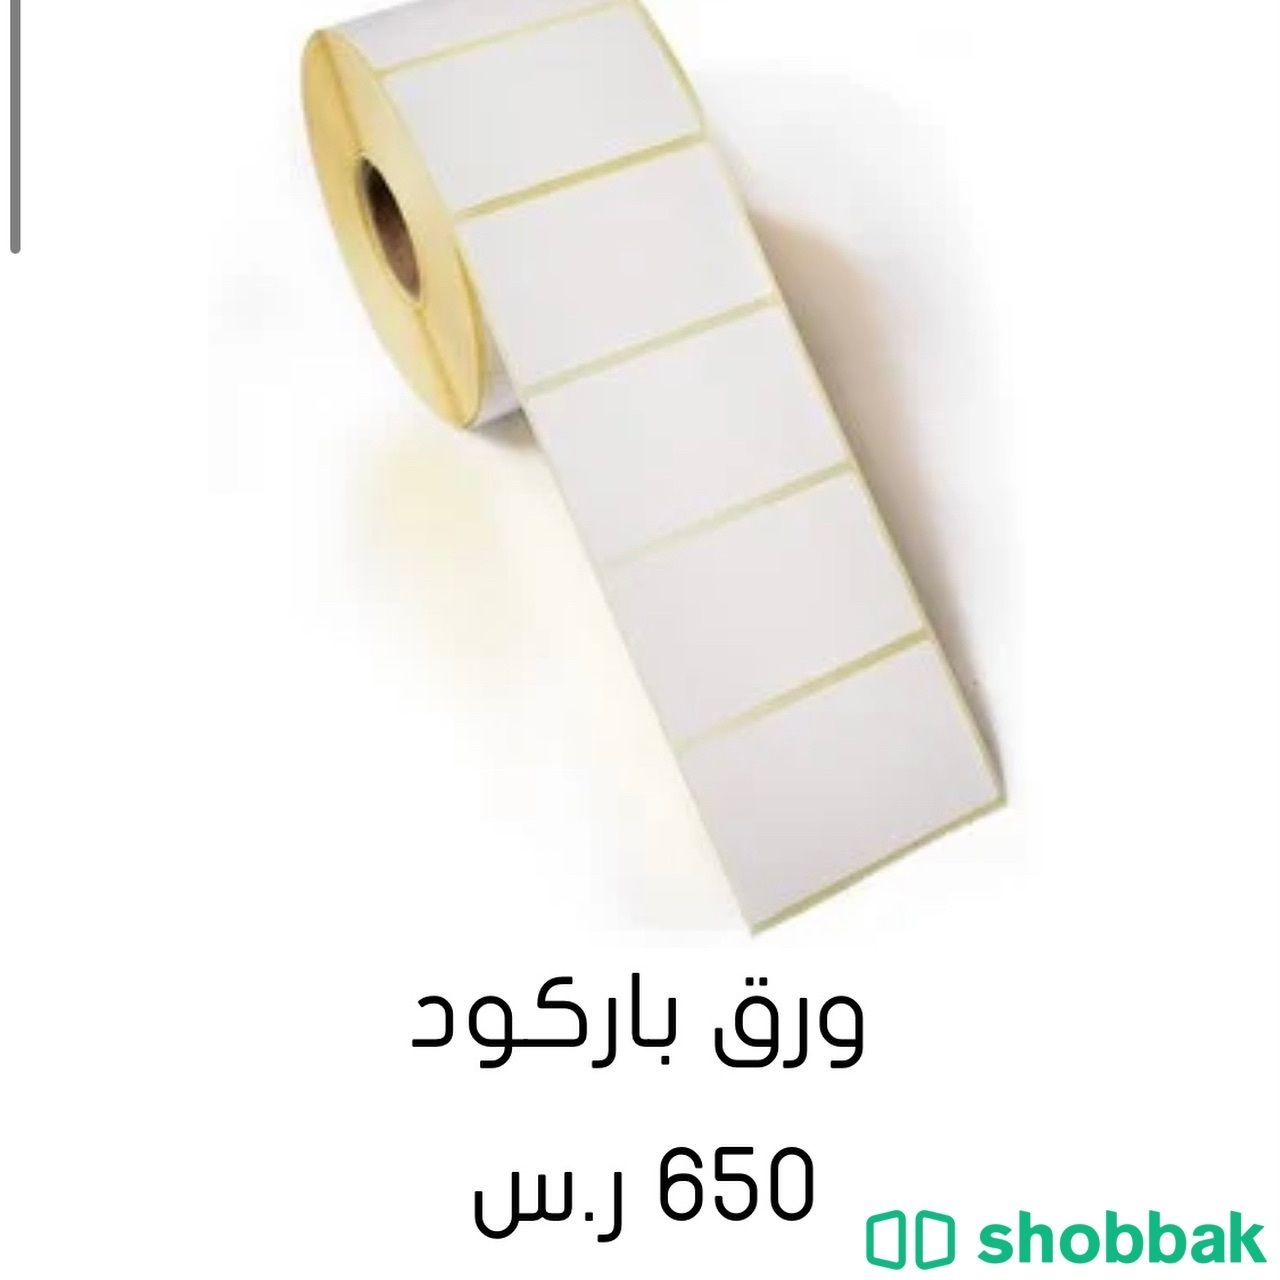 ورق باركود  Shobbak Saudi Arabia